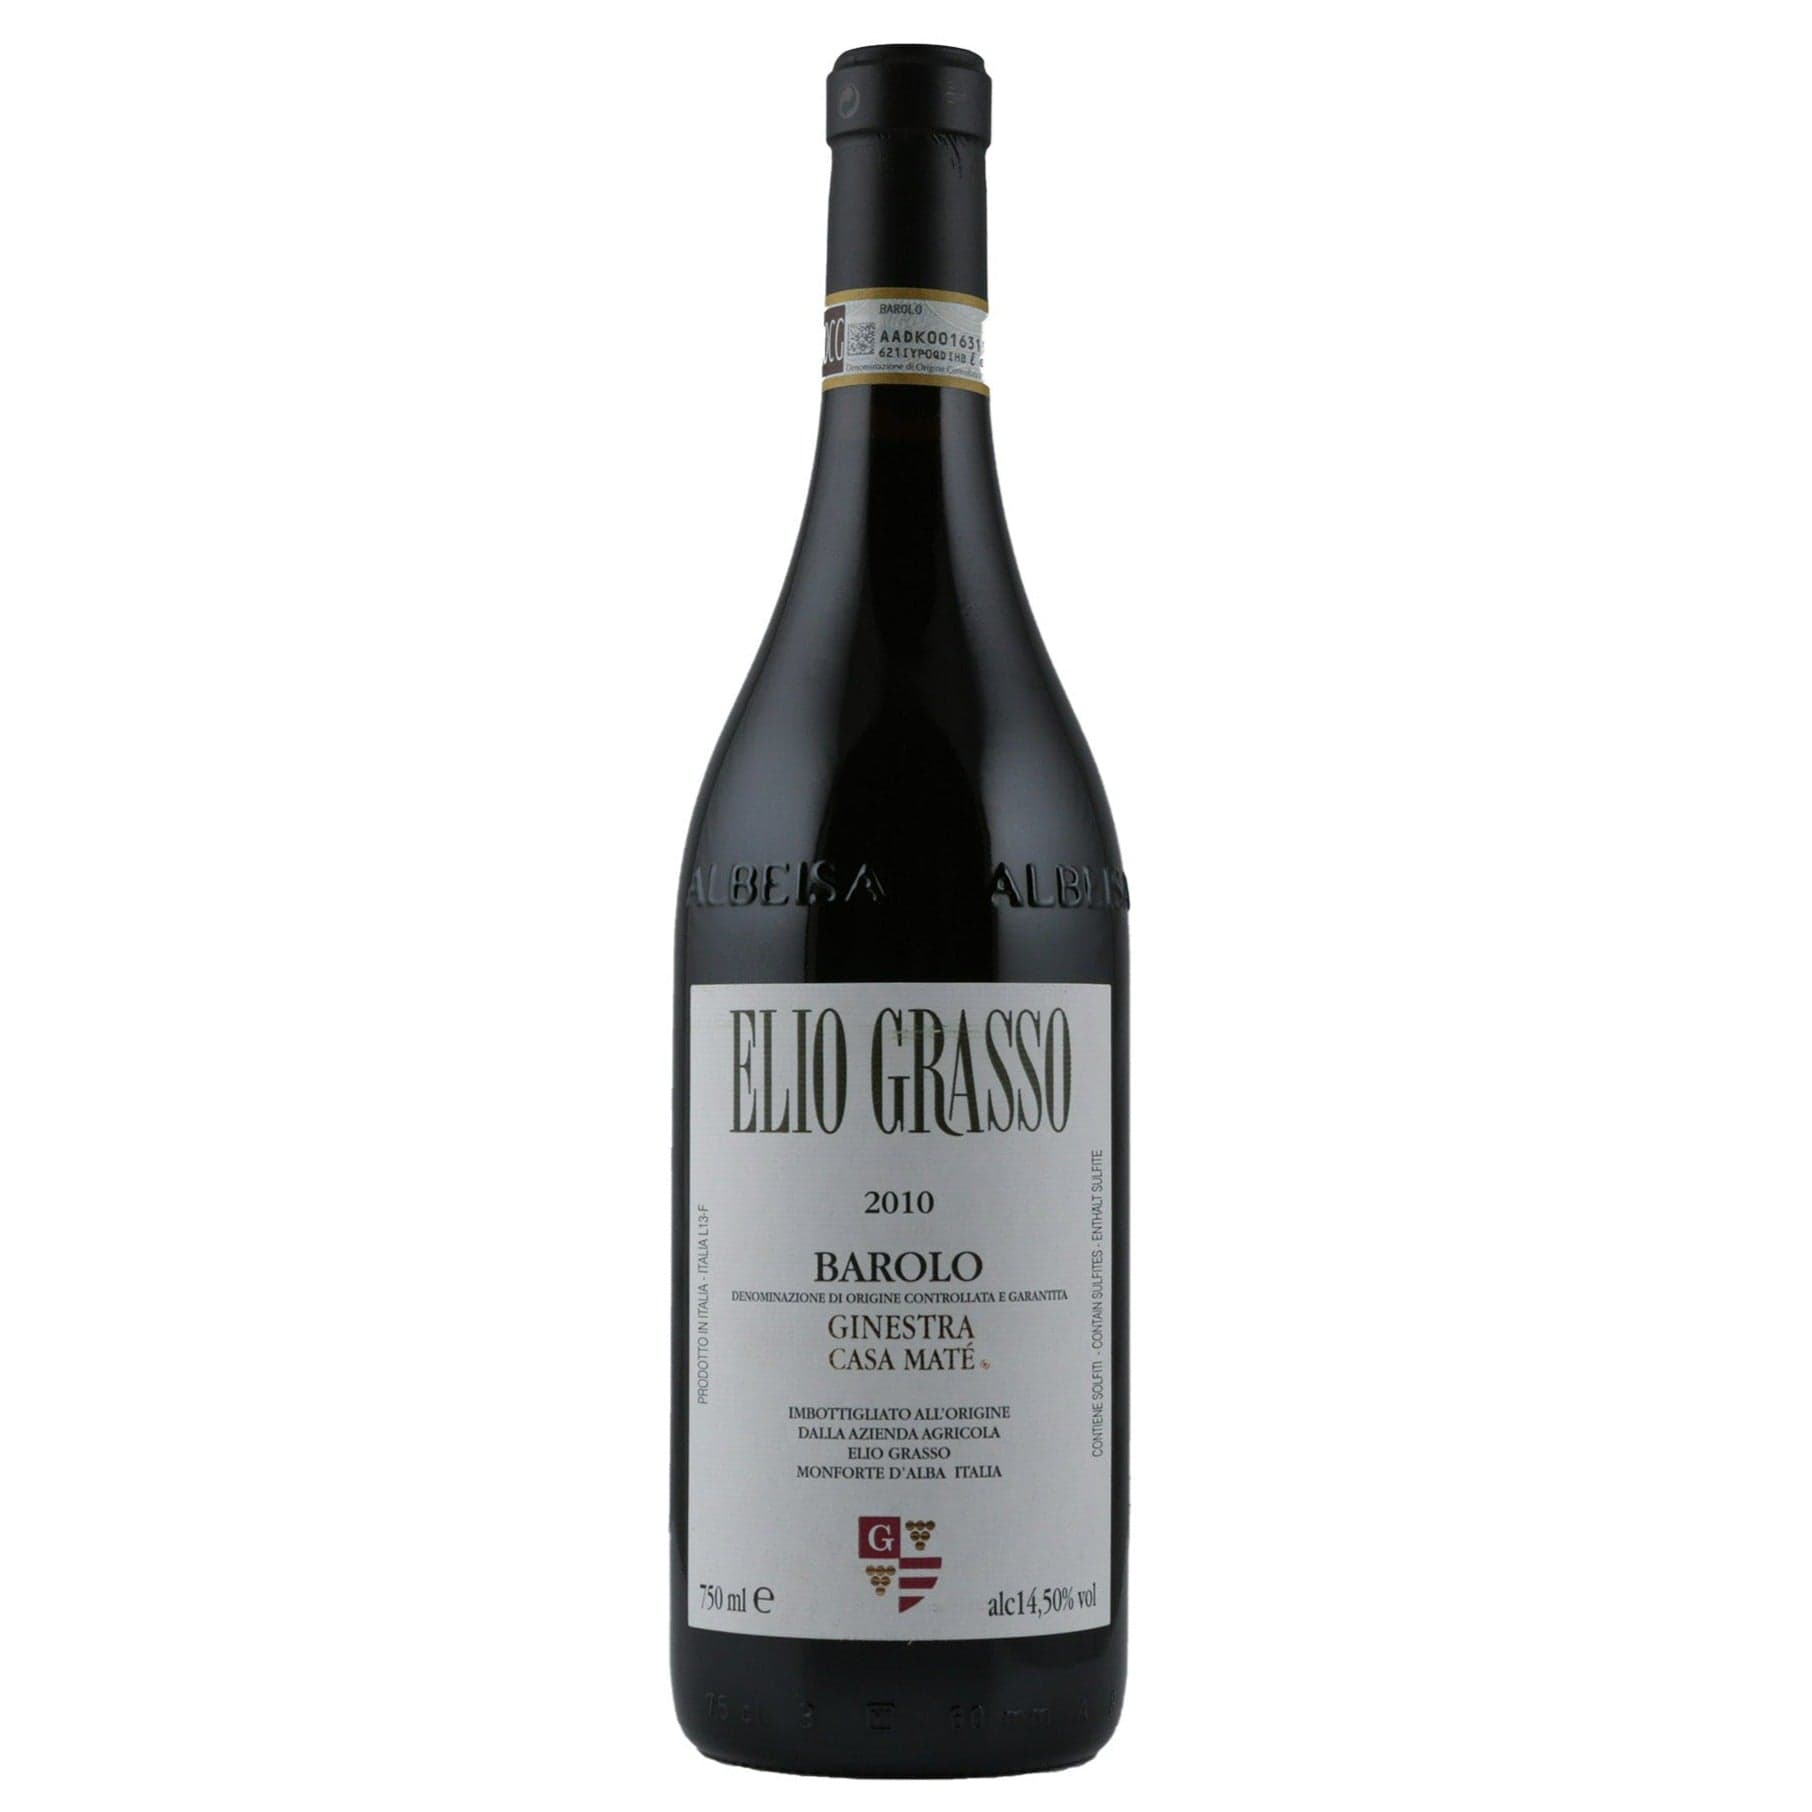 Single bottle of Red wine Elio Grasso, Ginestra Casa Mate, Barolo, 2010 100% Nebbiolo